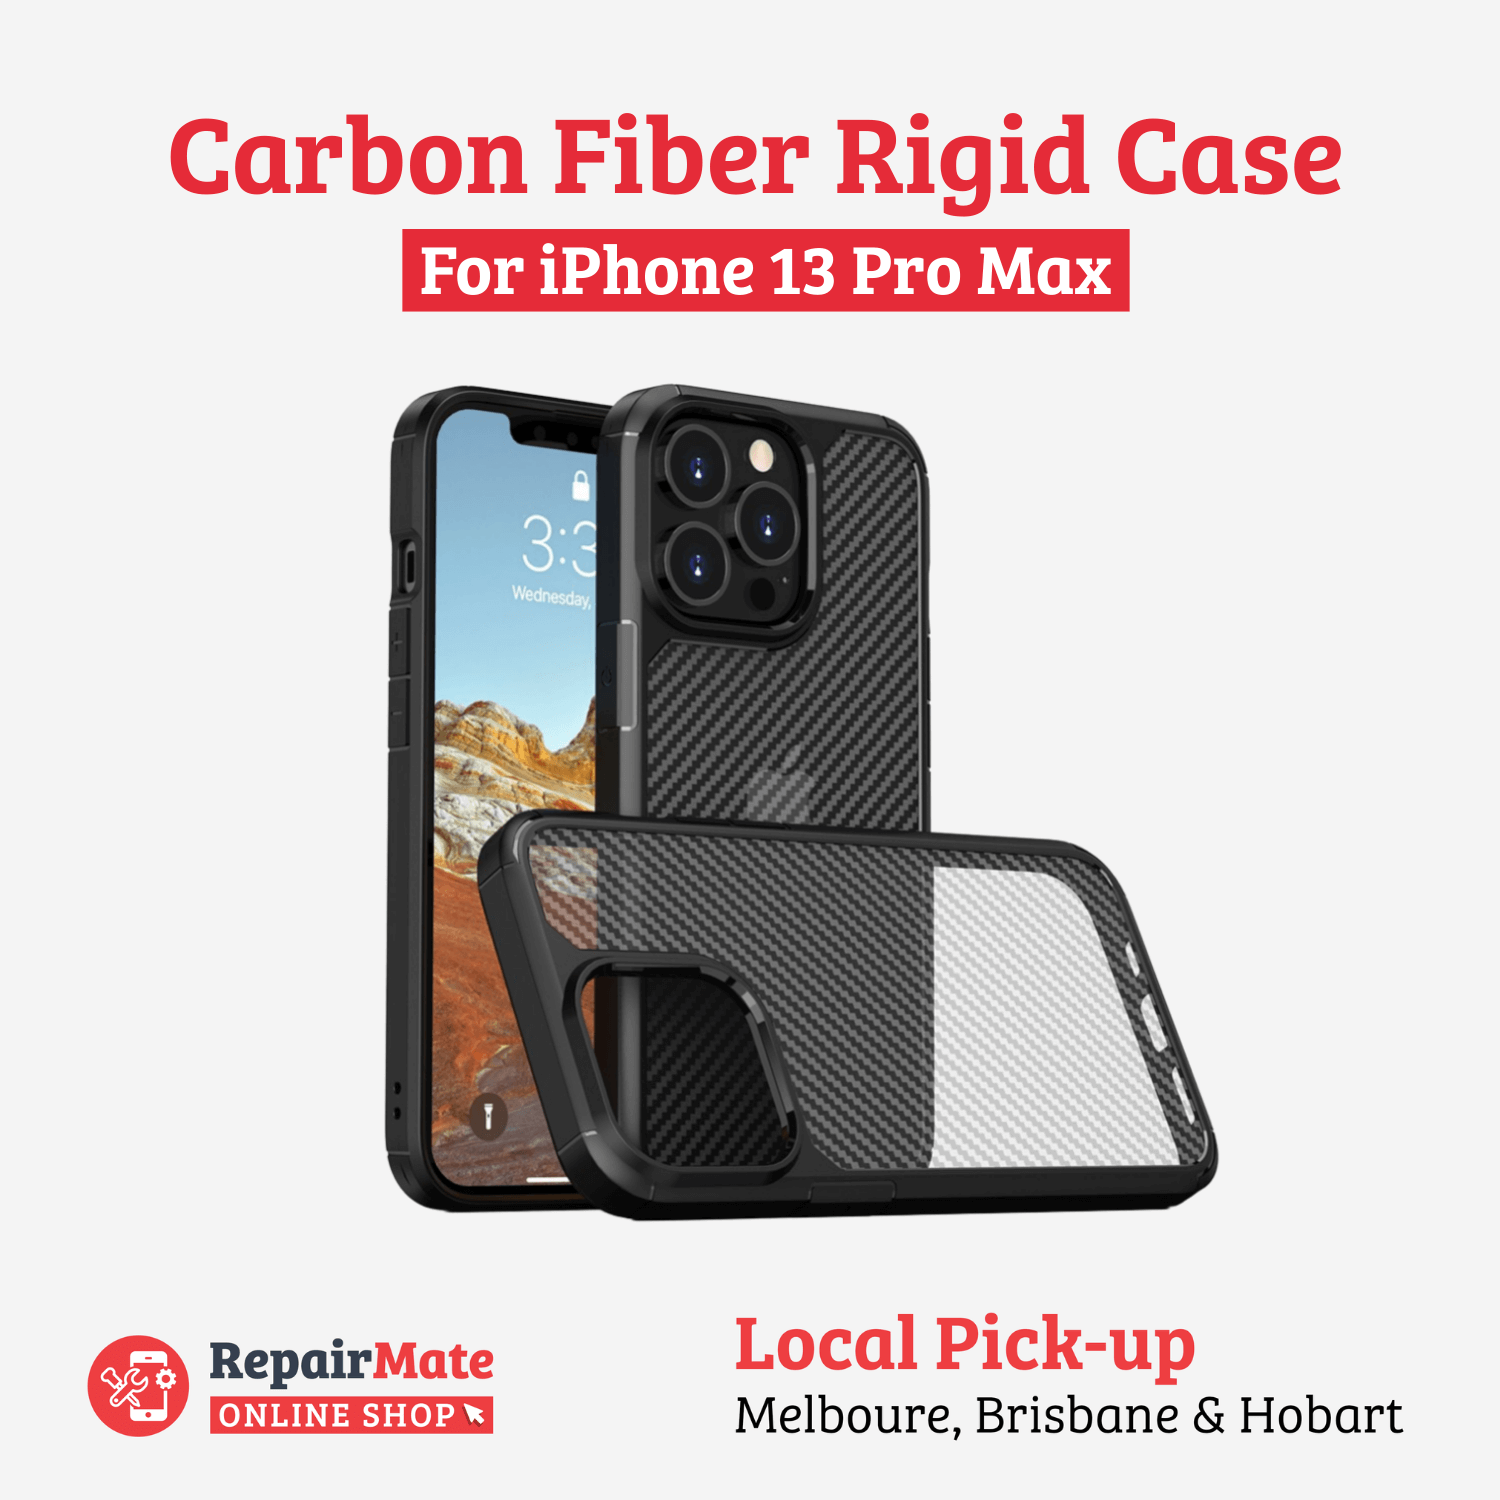 iPhone 13 Pro Max Carbon Fiber Rigid Case Cover